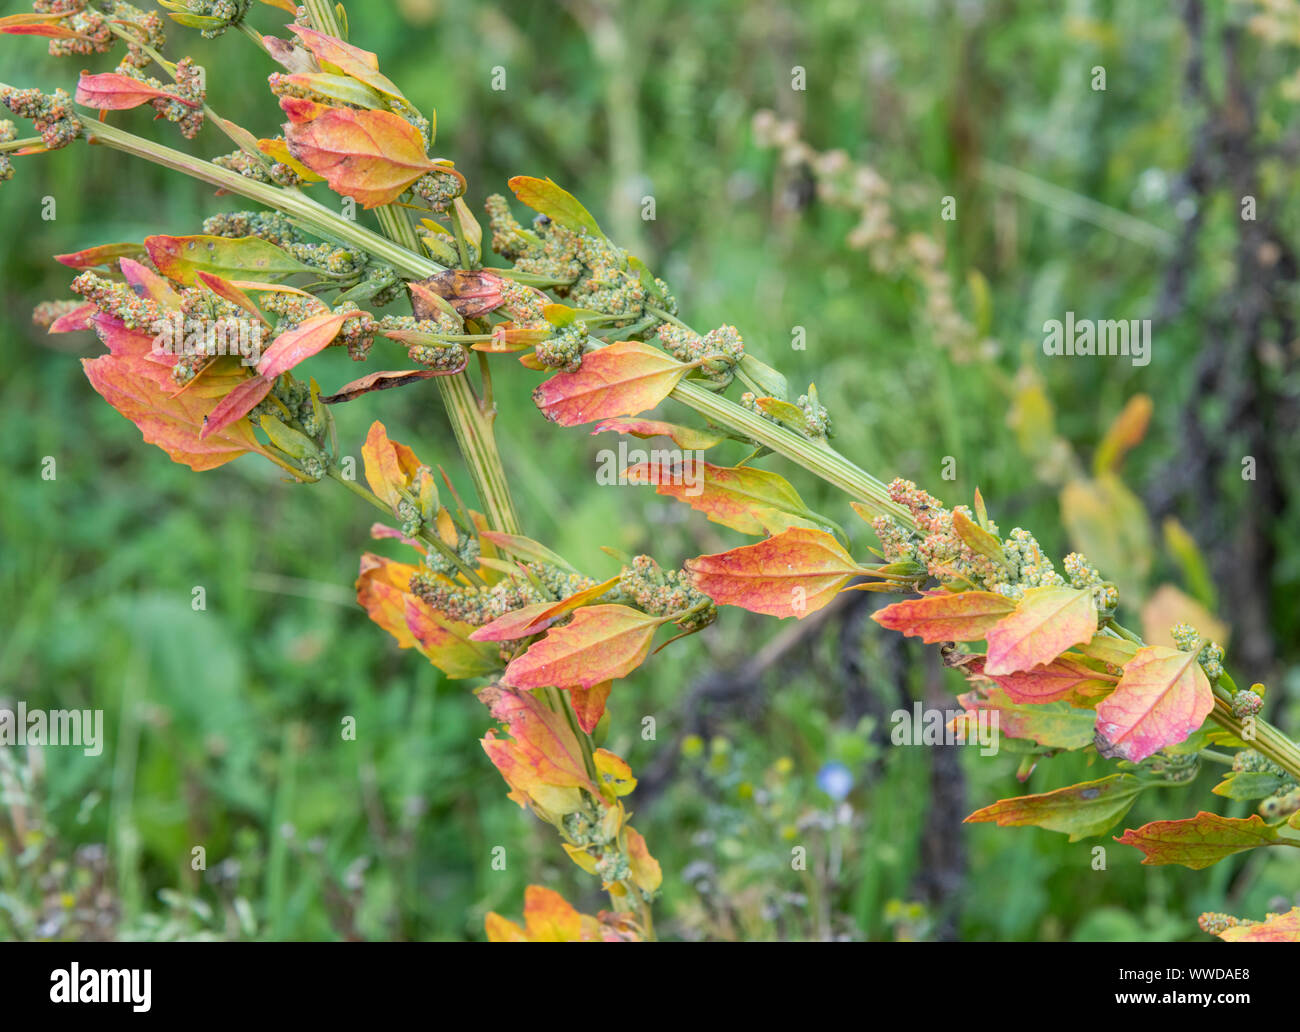 Morendo foglie di Chenopodium / Goosefoot - politica agricola weed - in un angolo di un campo. Eventualmente Chenopodium album - VEDERE LE NOTE per ulteriori dettagli. Foto Stock